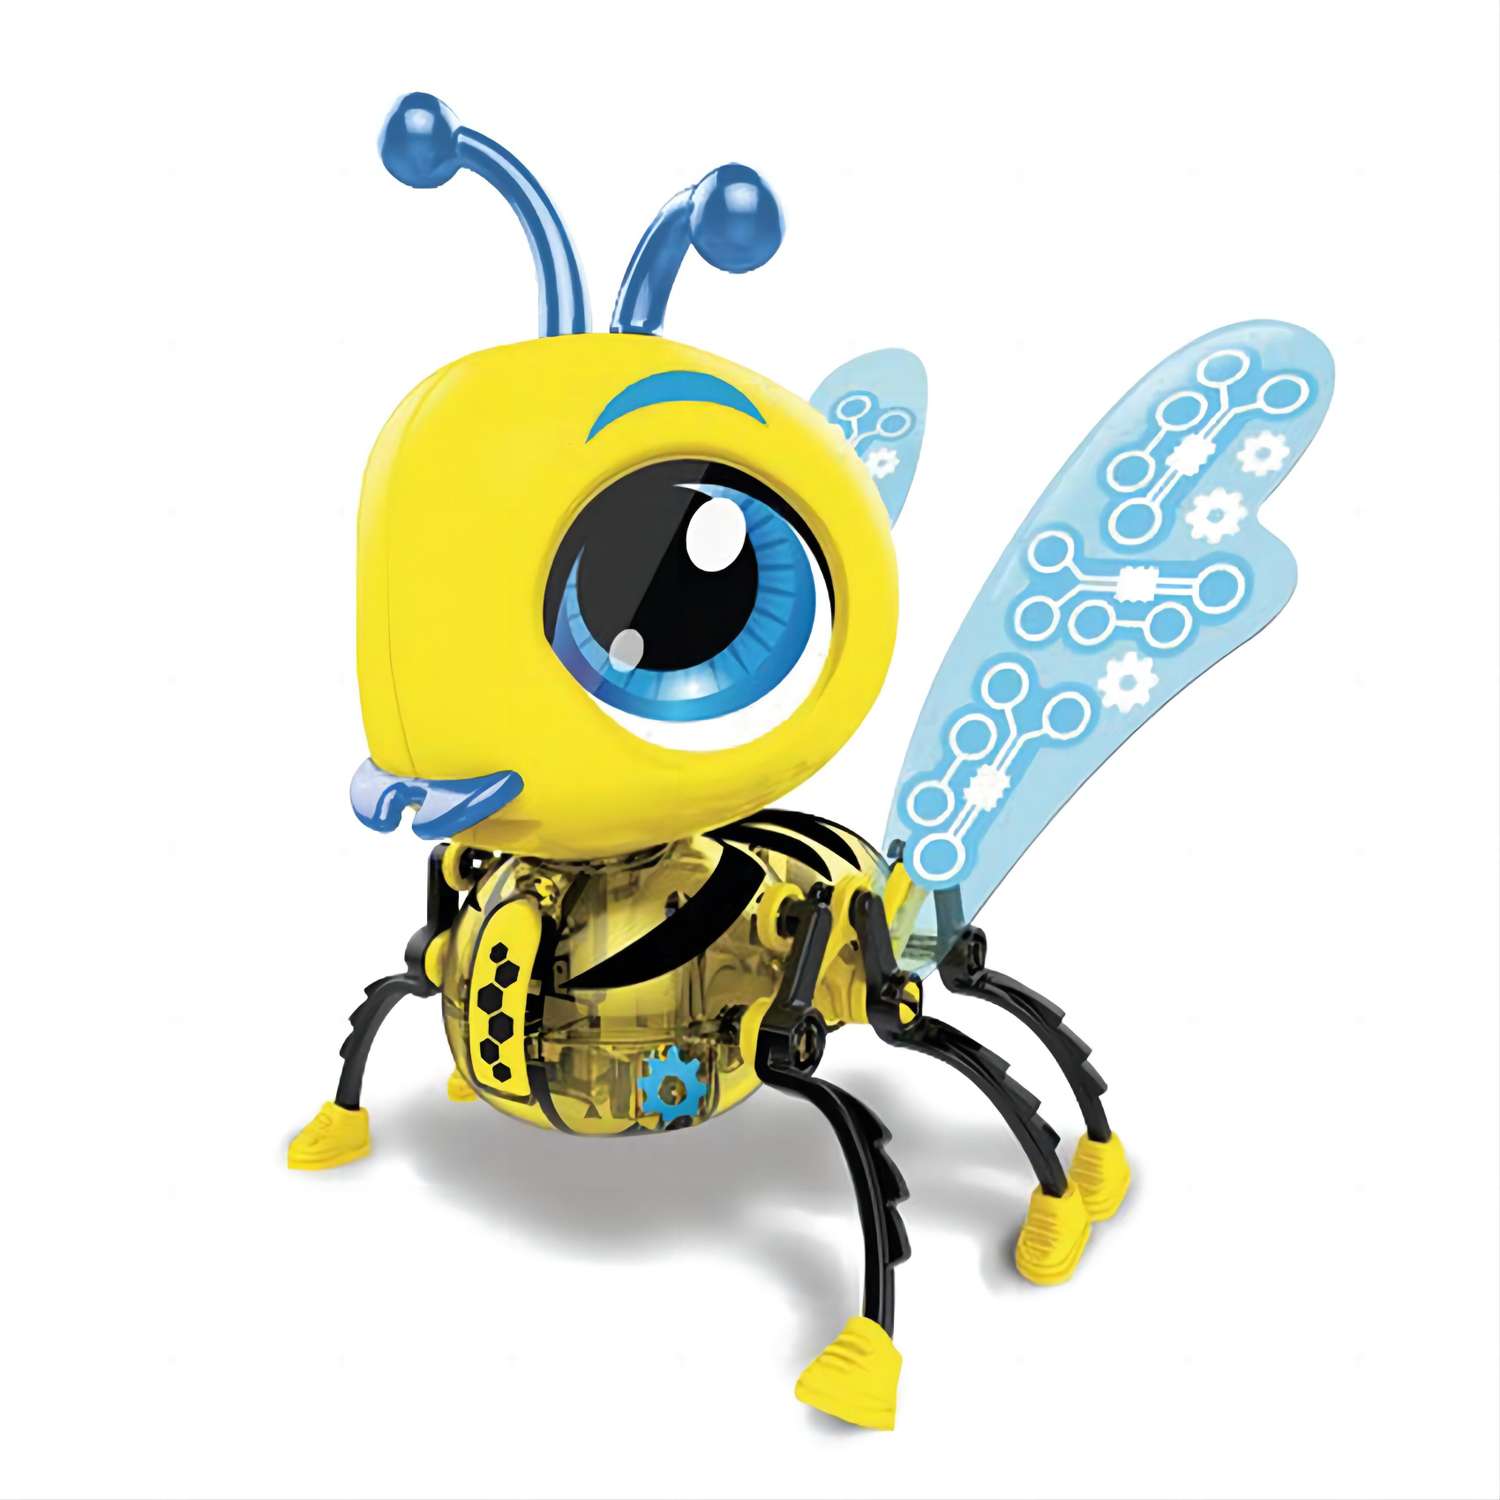 Робот-пчелка Fengchengjia toys Желтый YS0238506 в ассортименте - фото 3